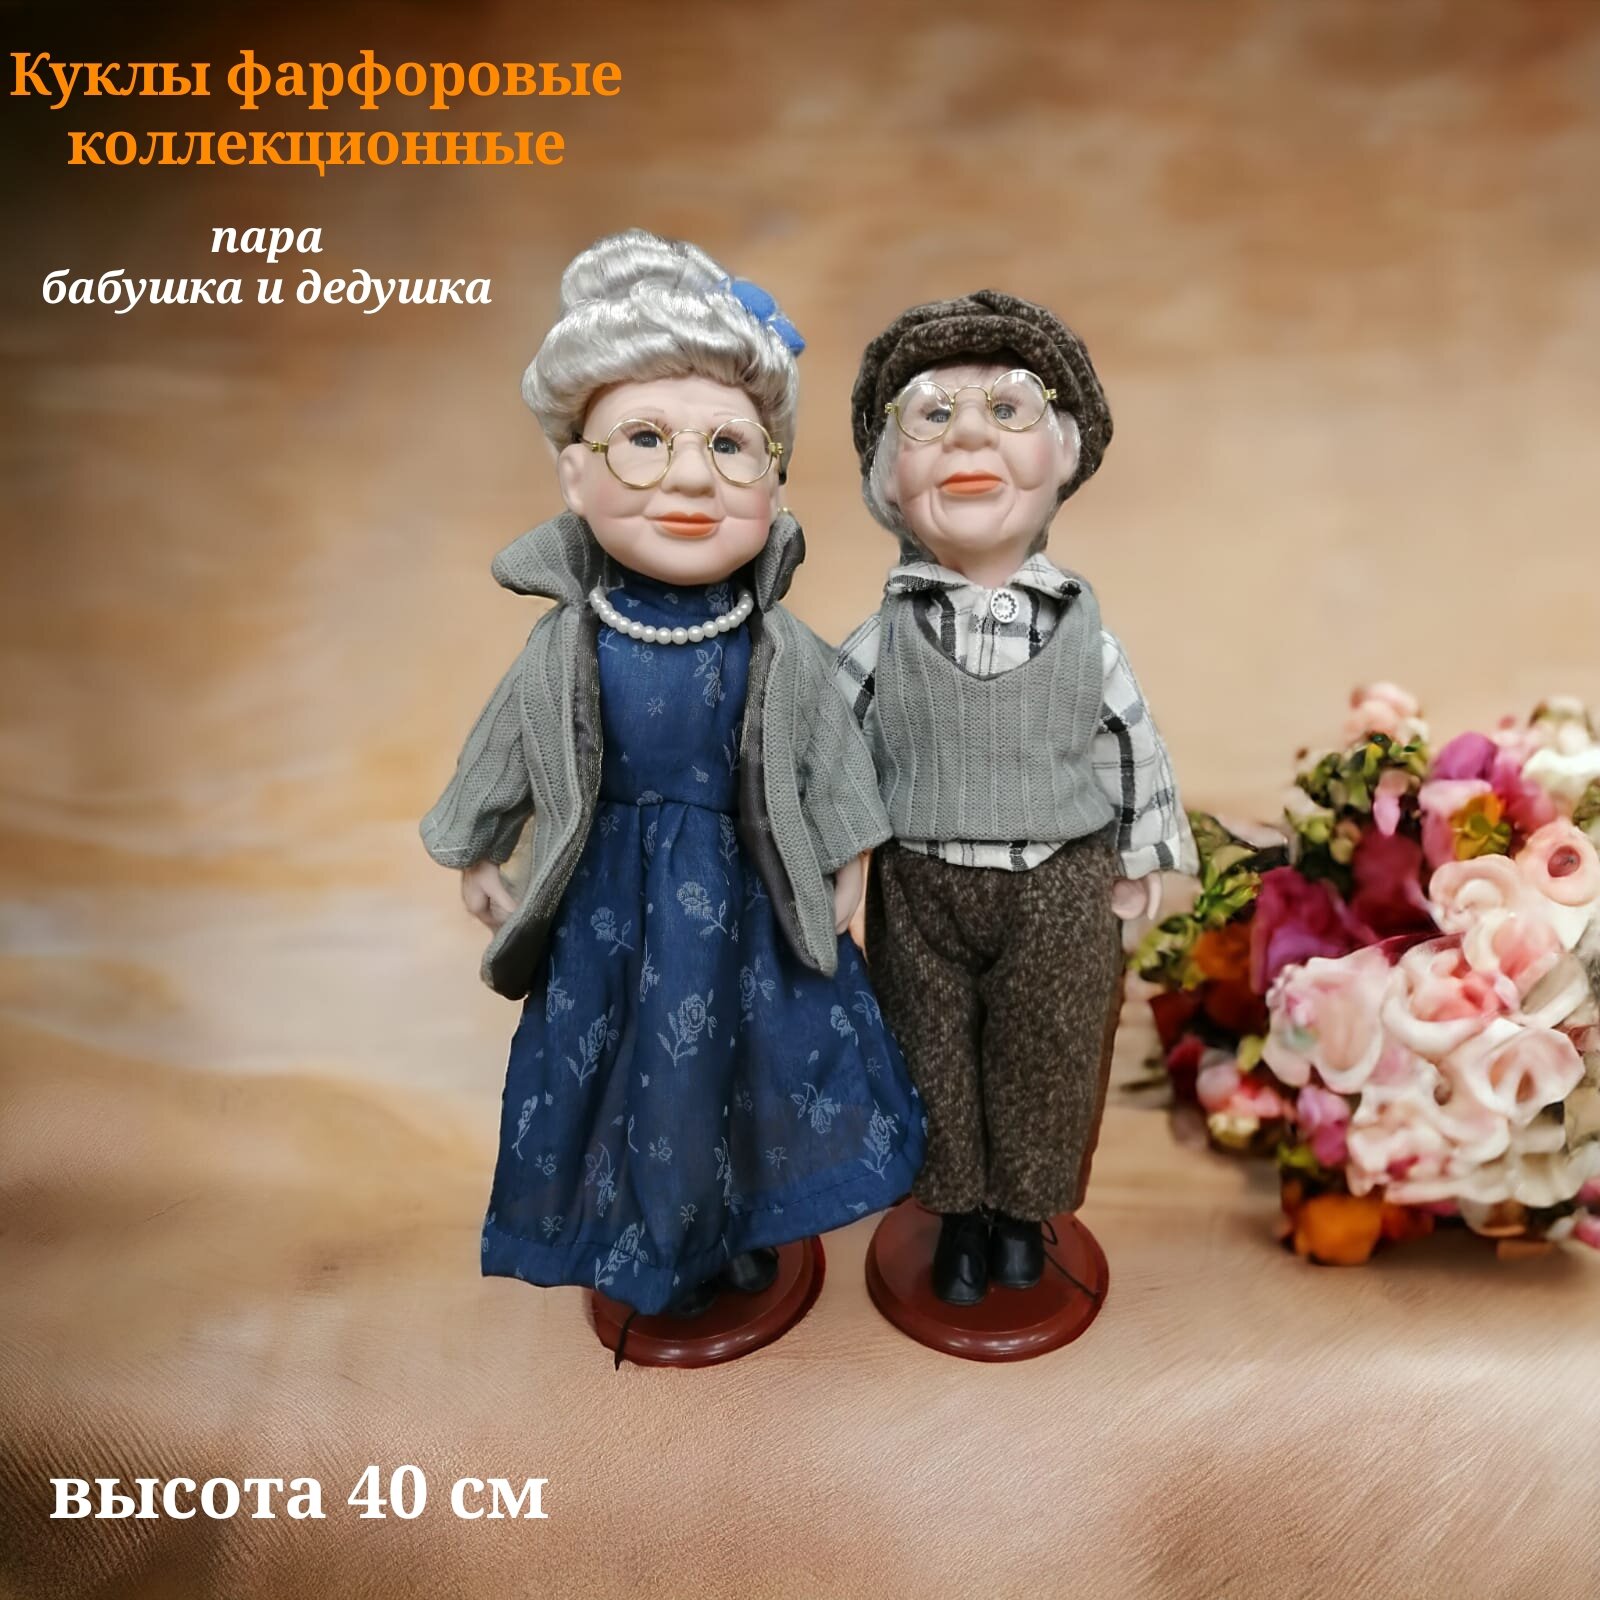 Фарфоровые куклы/ Коллекционная кукла с ручной росписью лица Бабушка и Дедушка в шляпе пара 40 см кукла из фарфора и текстиля на подставке